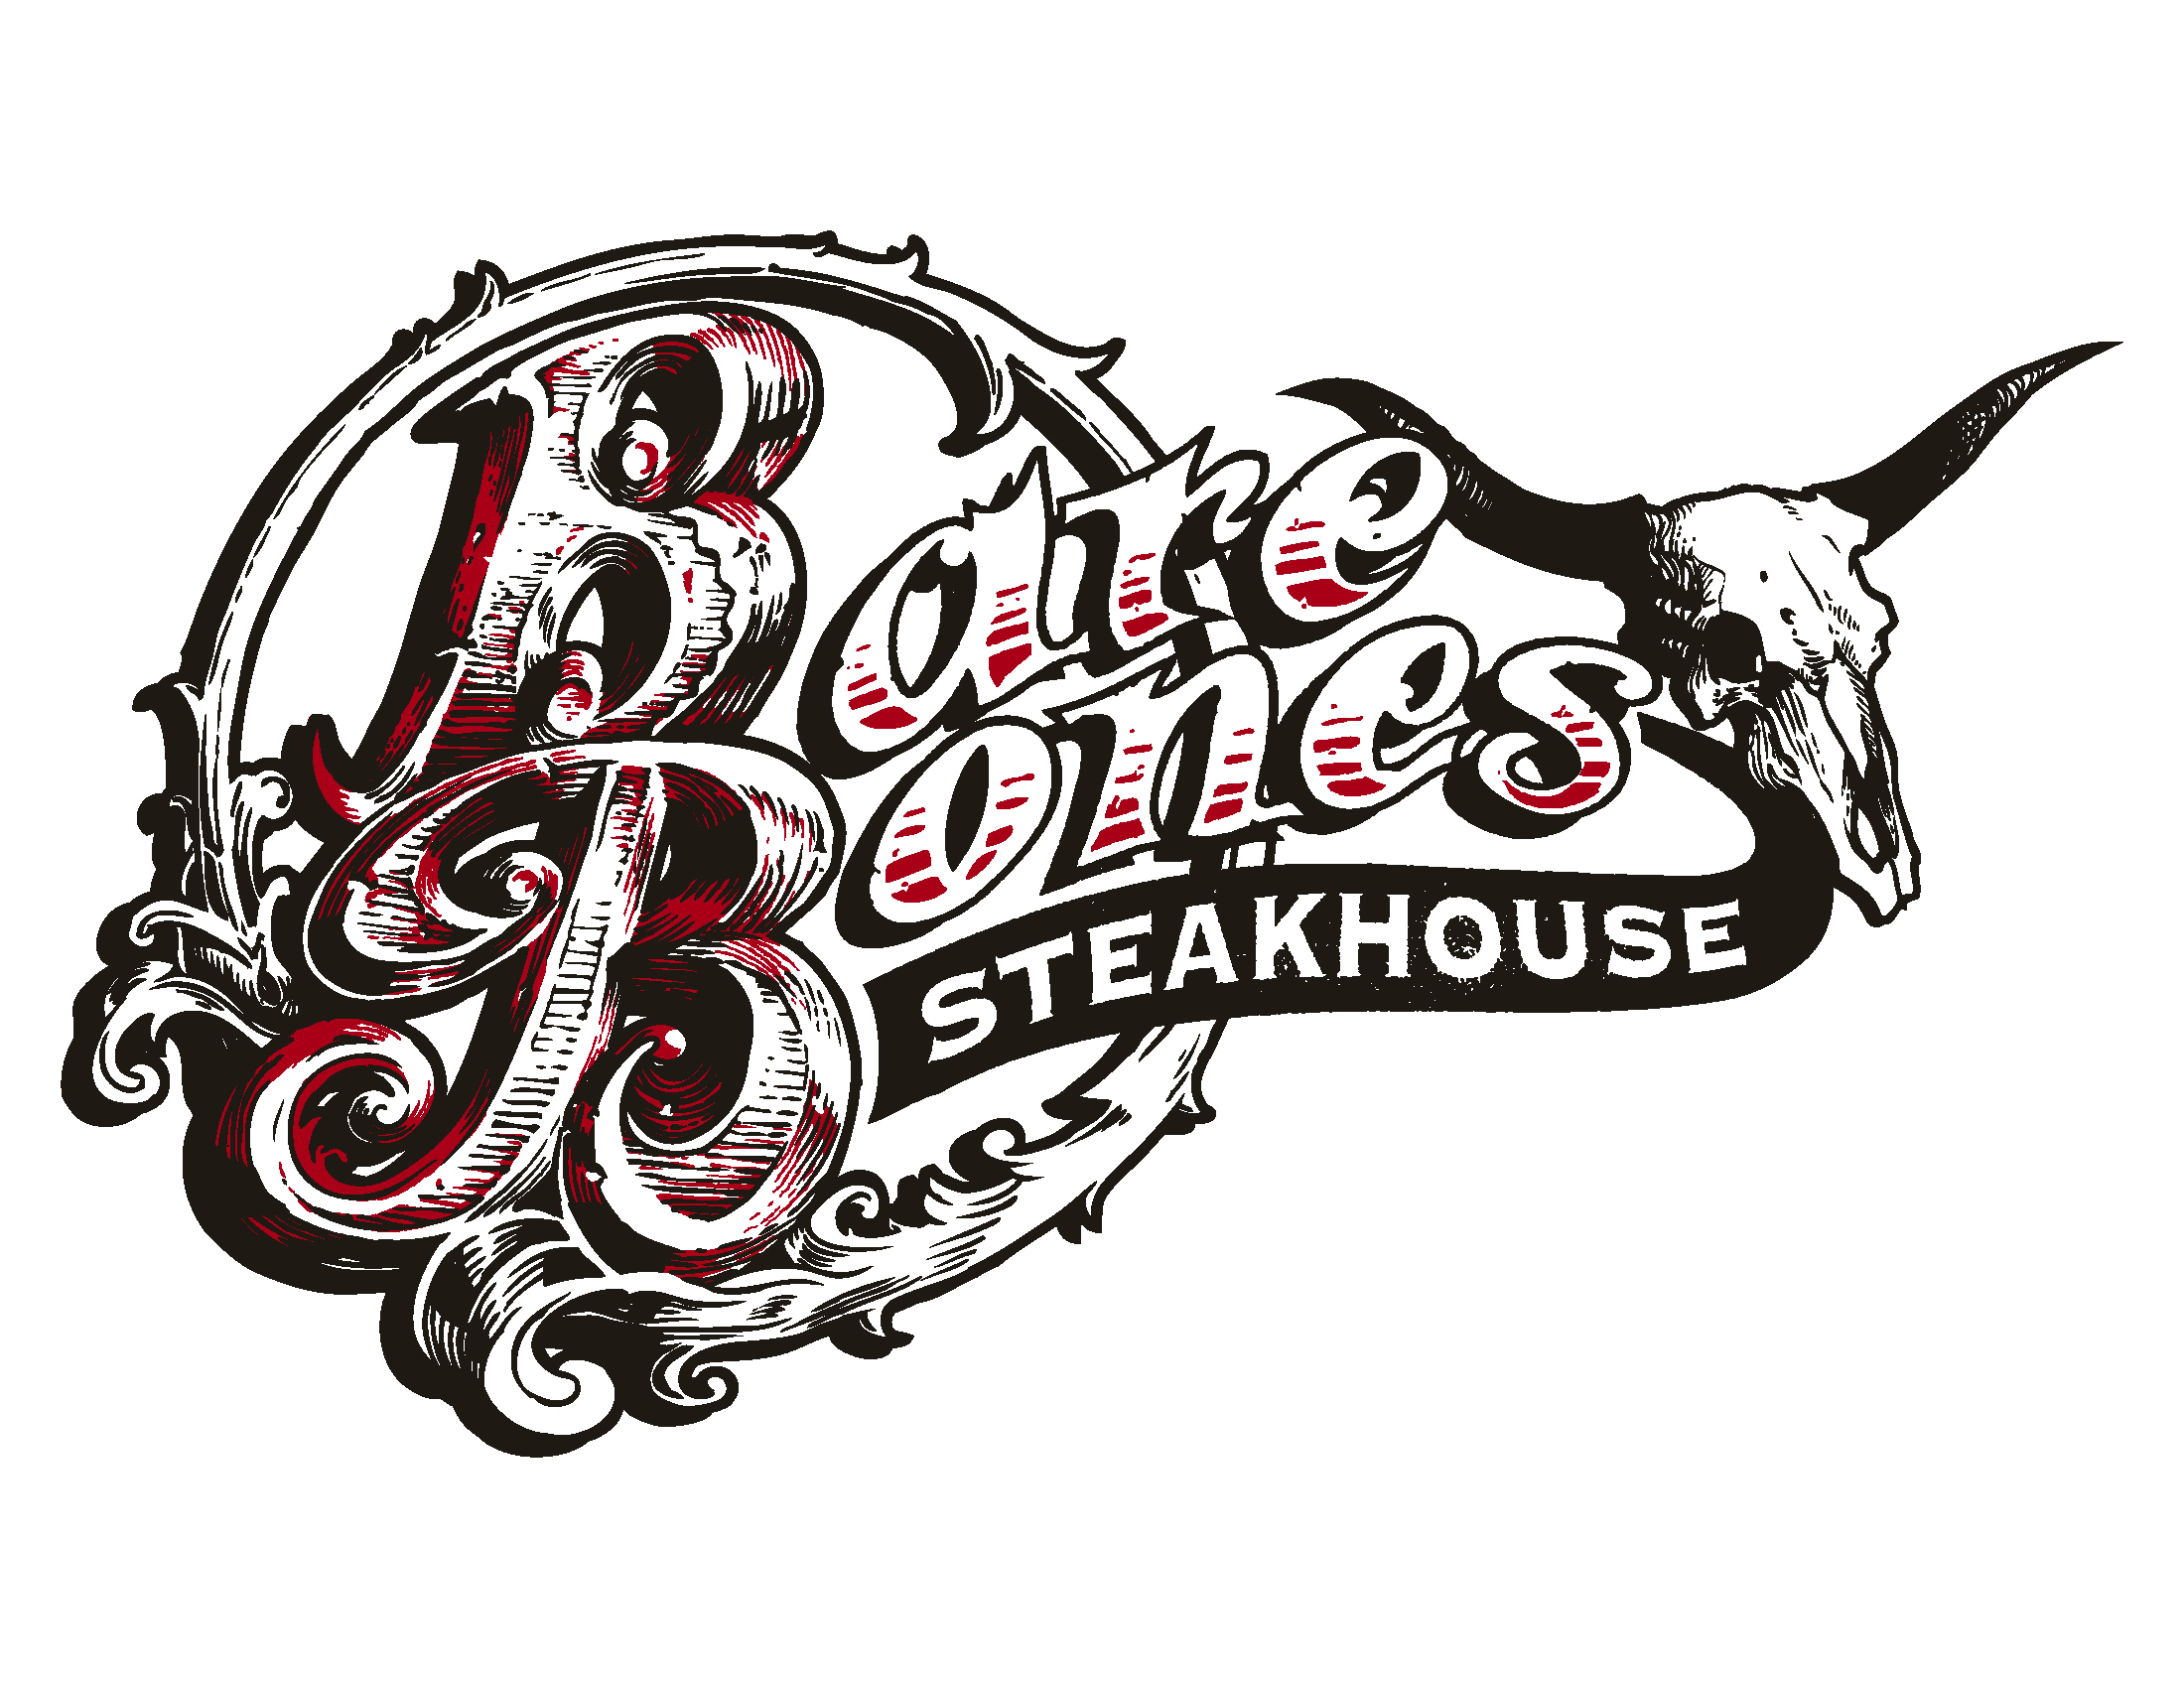 Bare Bones Steakhouse